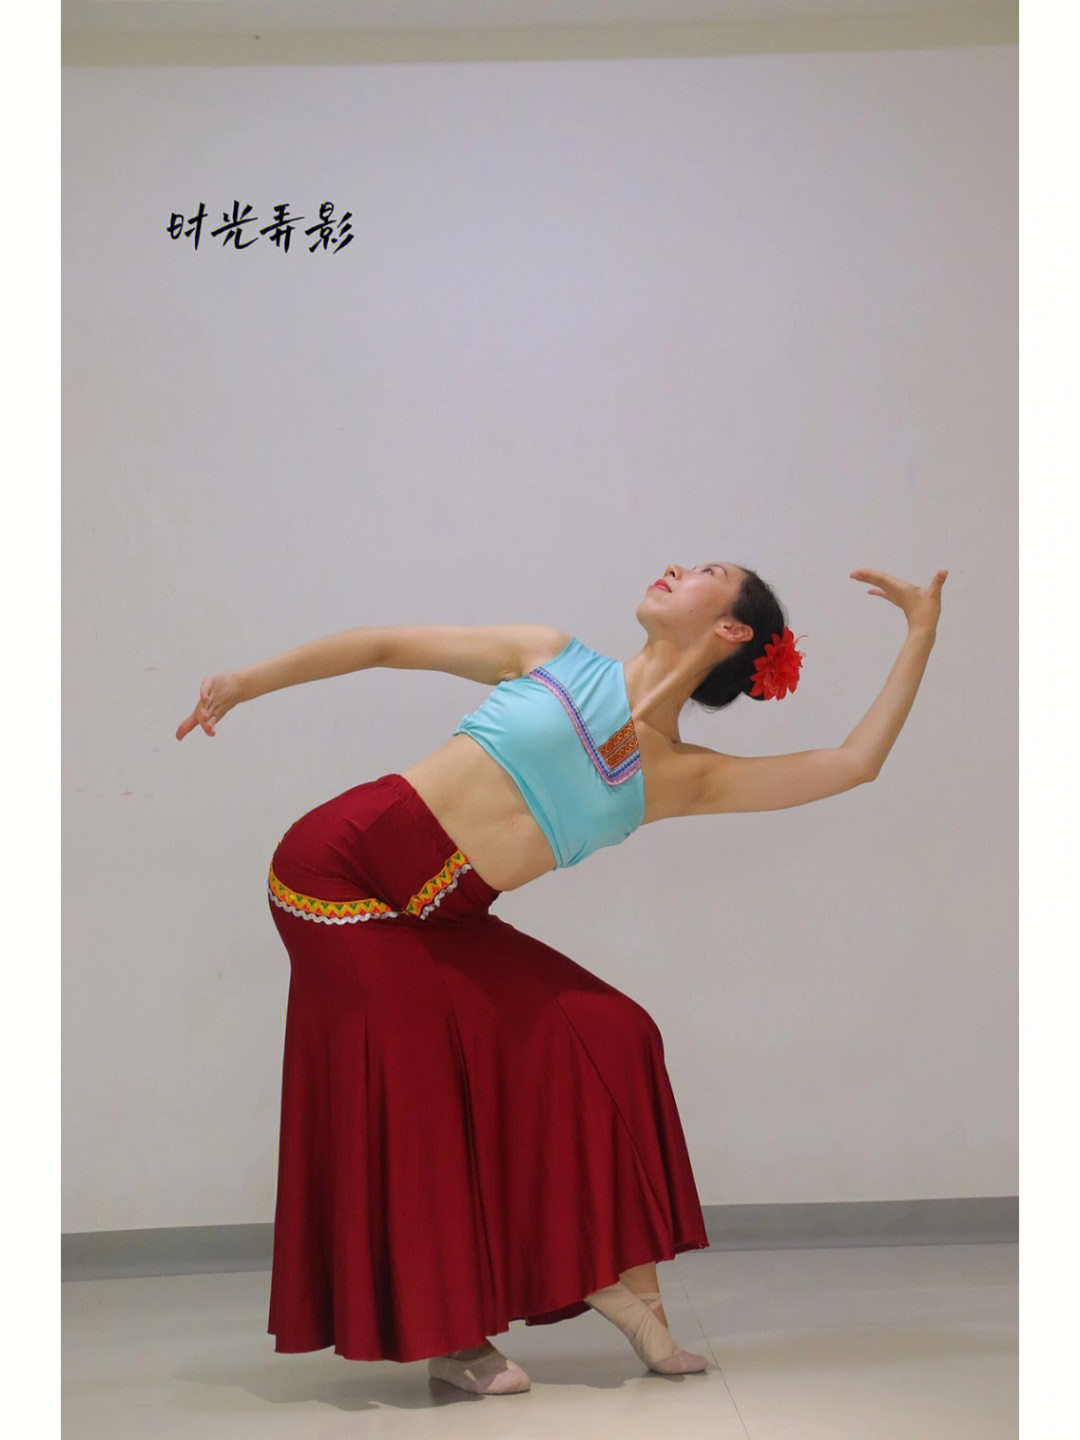 傣族舞蹈拍摄